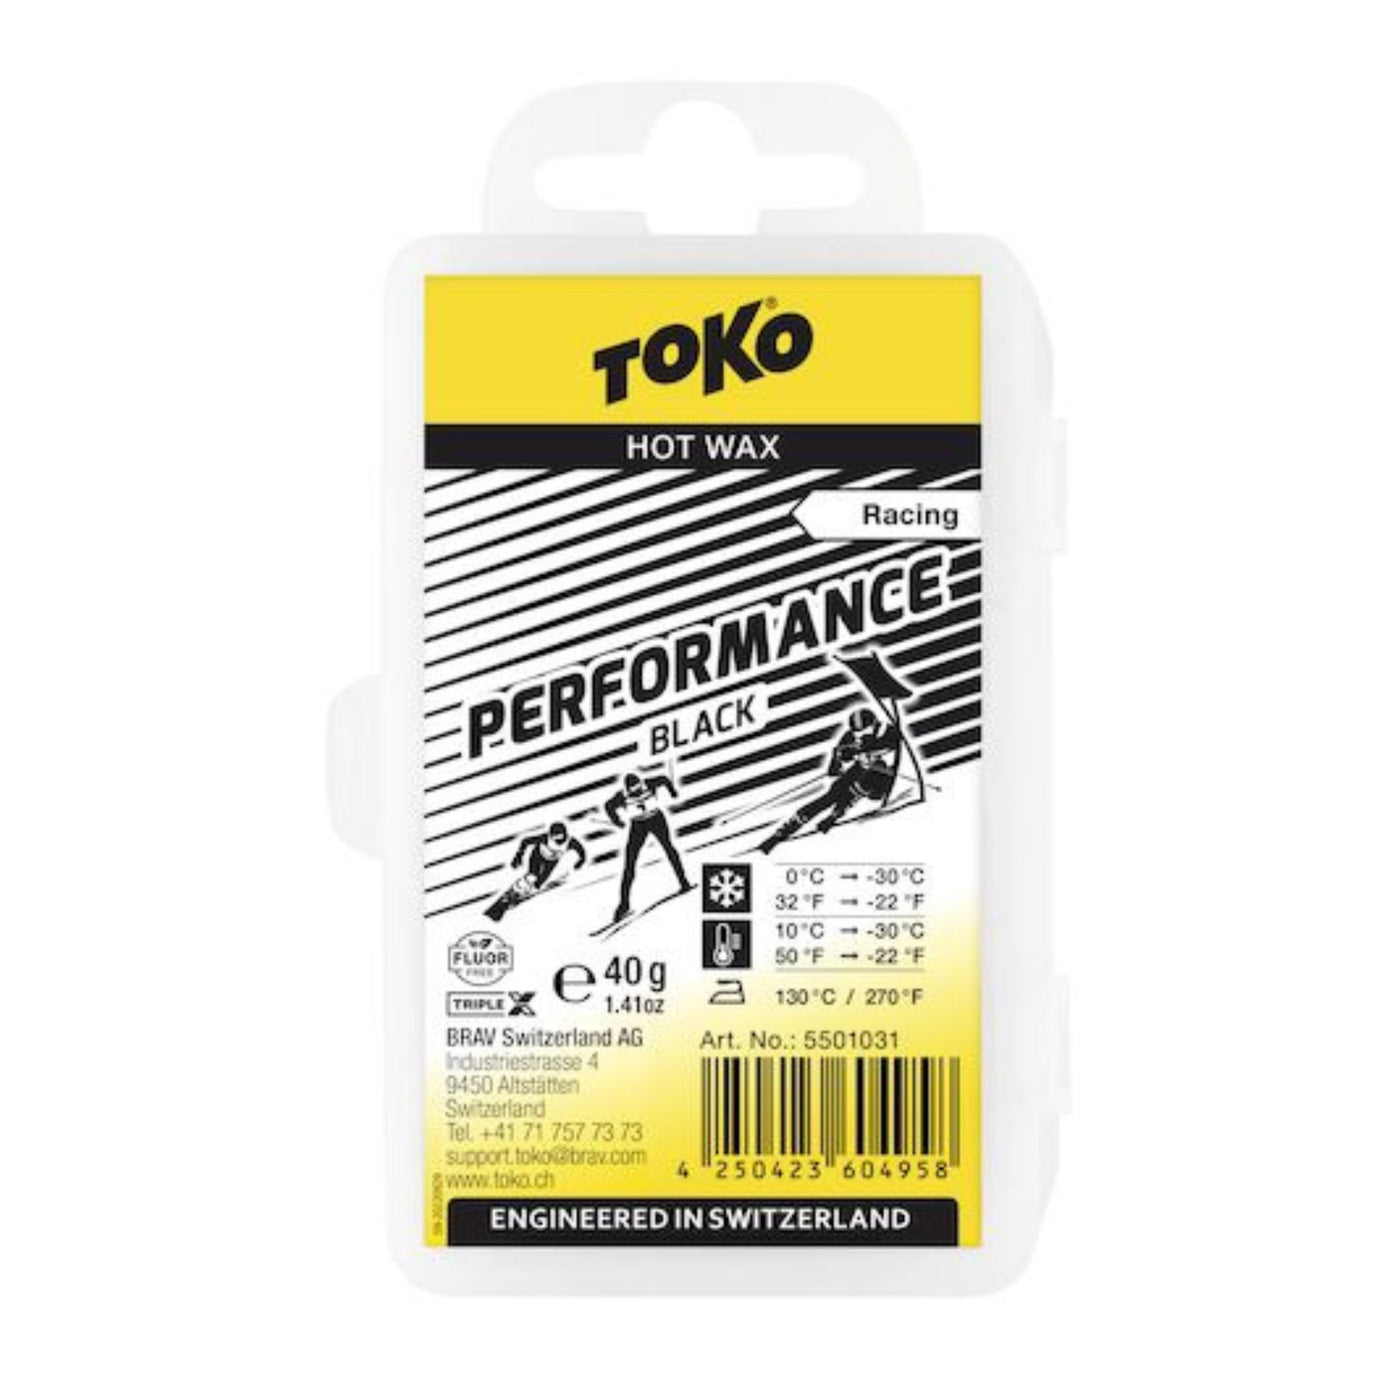 Toko Performance Wax black - 40g SKI & SNOWBOARD WAX Toko   